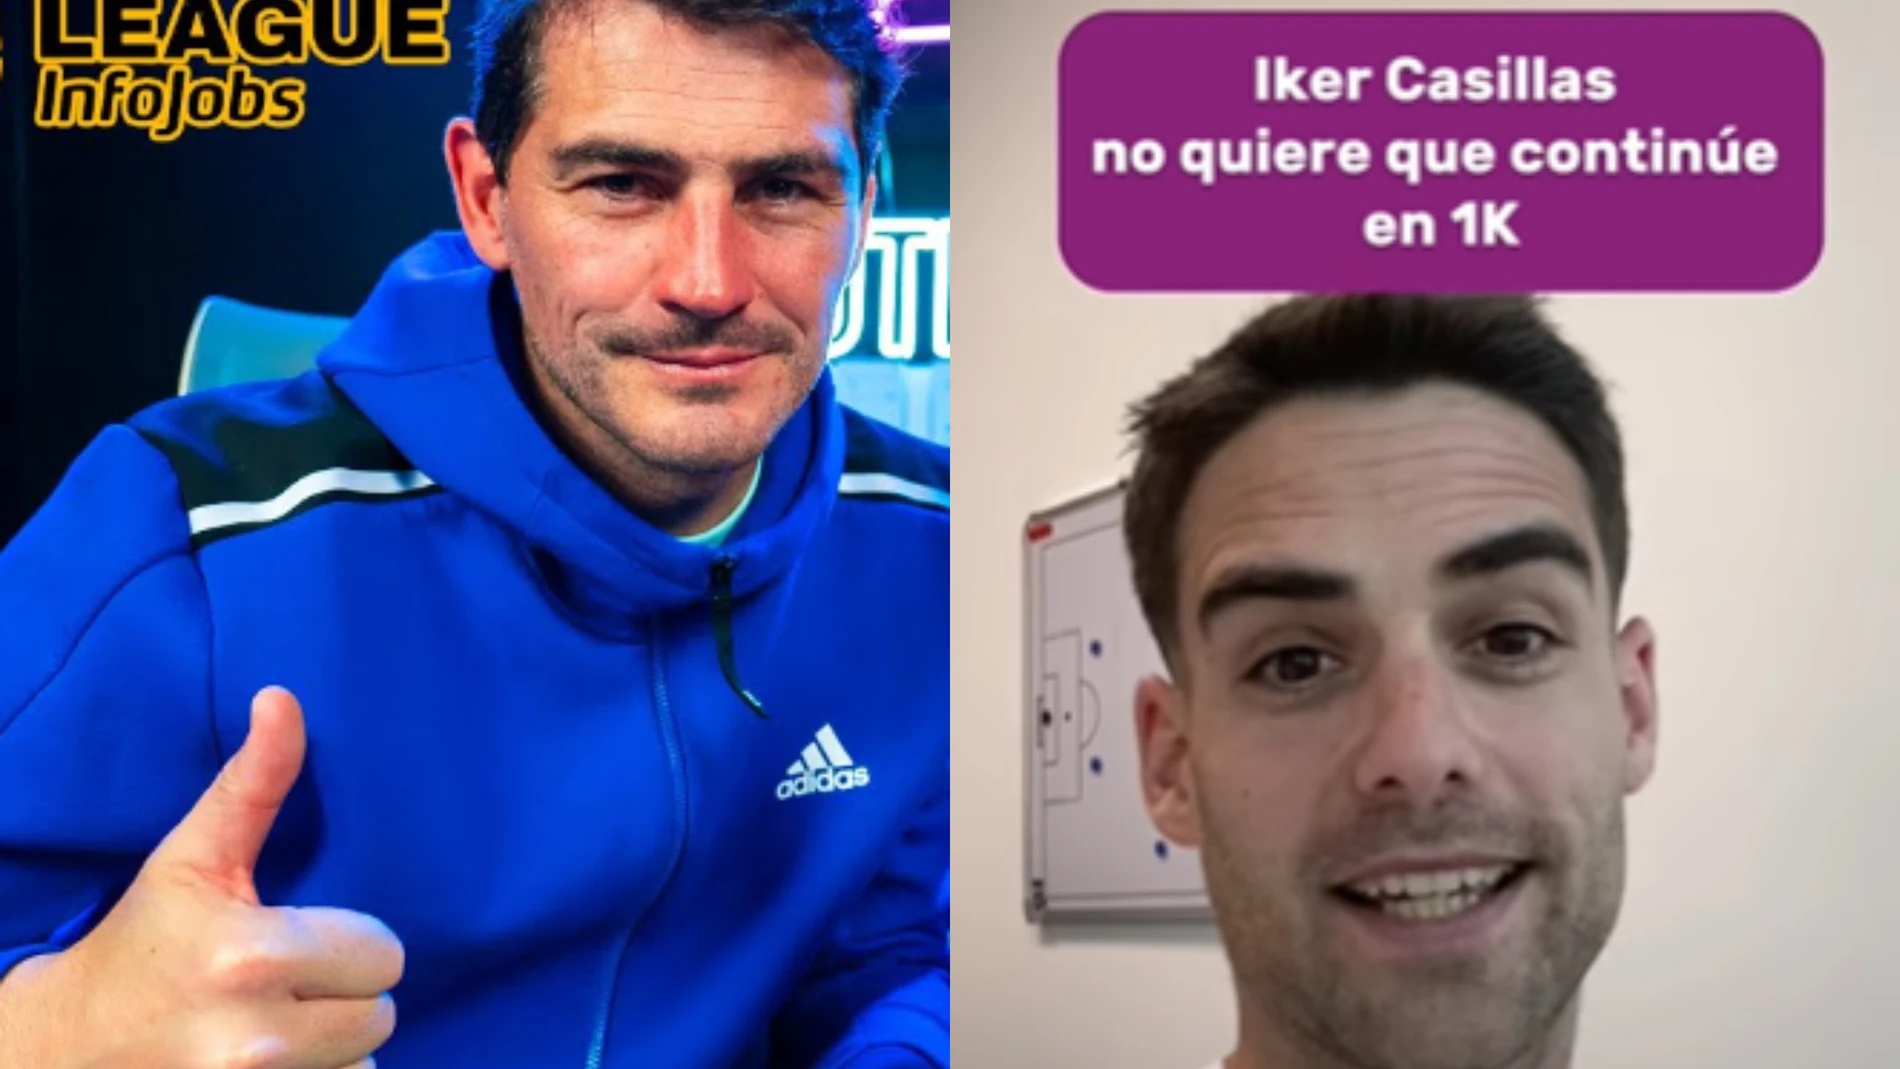  Iker Casillas y Erik Llorca